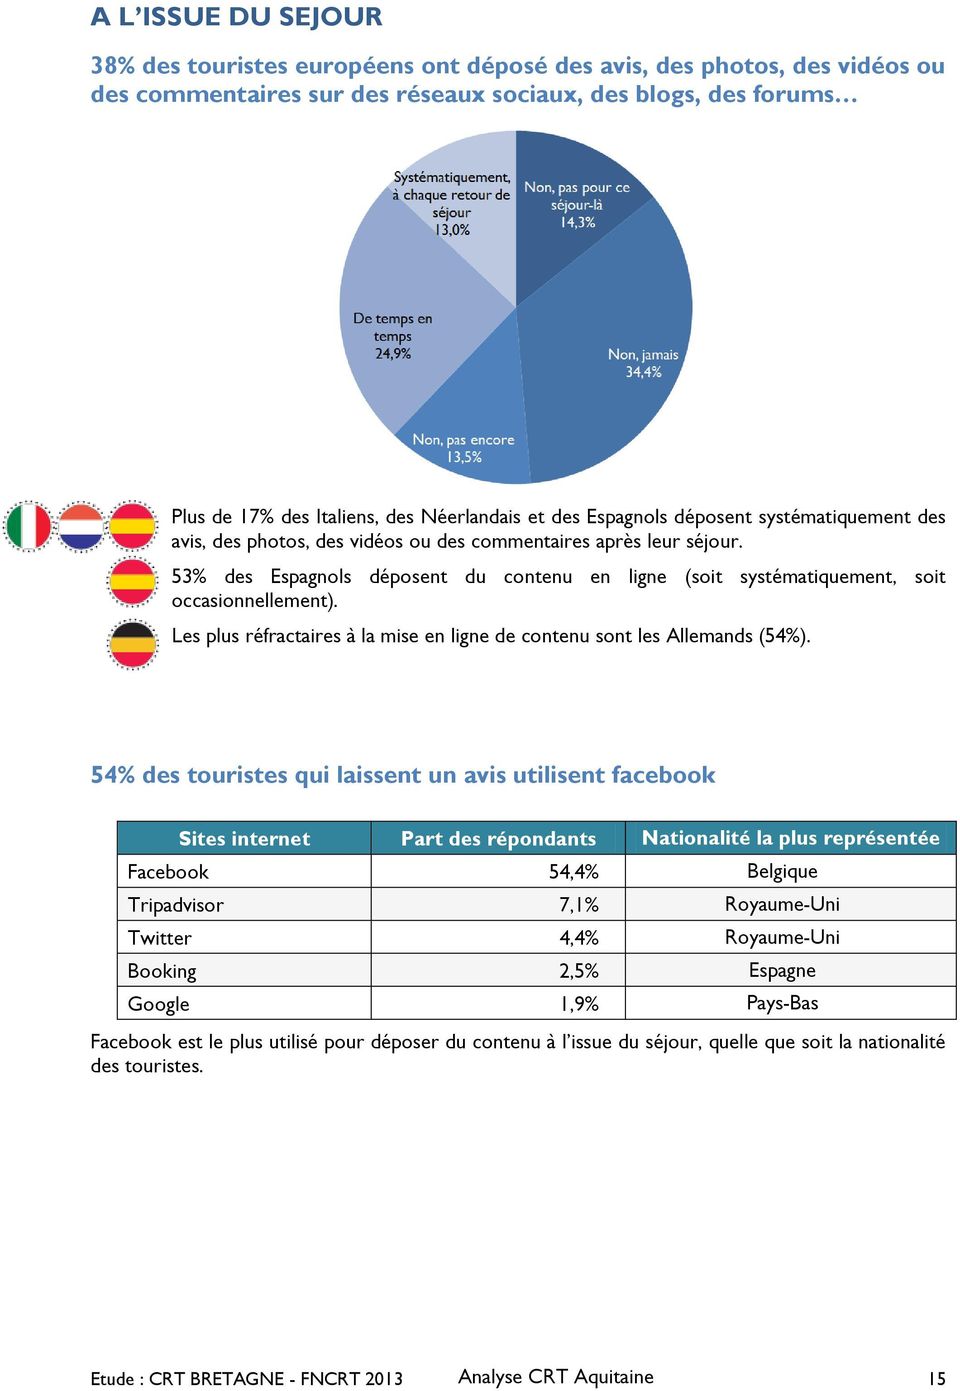 53% des Espagnols déposent du contenu en ligne (soit systématiquement, soit occasionnellement). Les plus réfractaires à la mise en ligne de contenu sont les Allemands (54%).